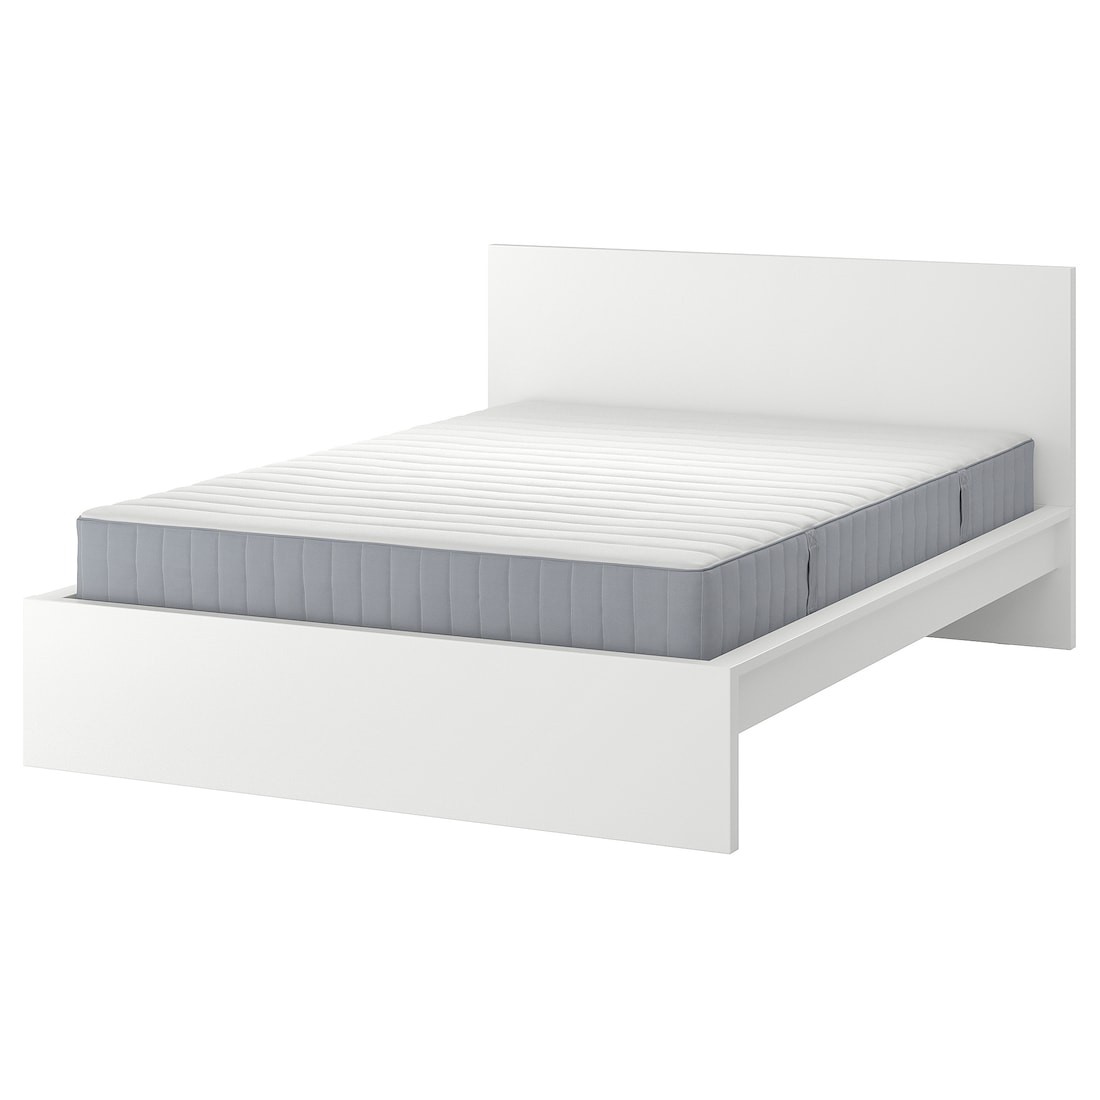 MALM Кровать с матрасом, белый / Valevåg средней жесткости, 140x200 см